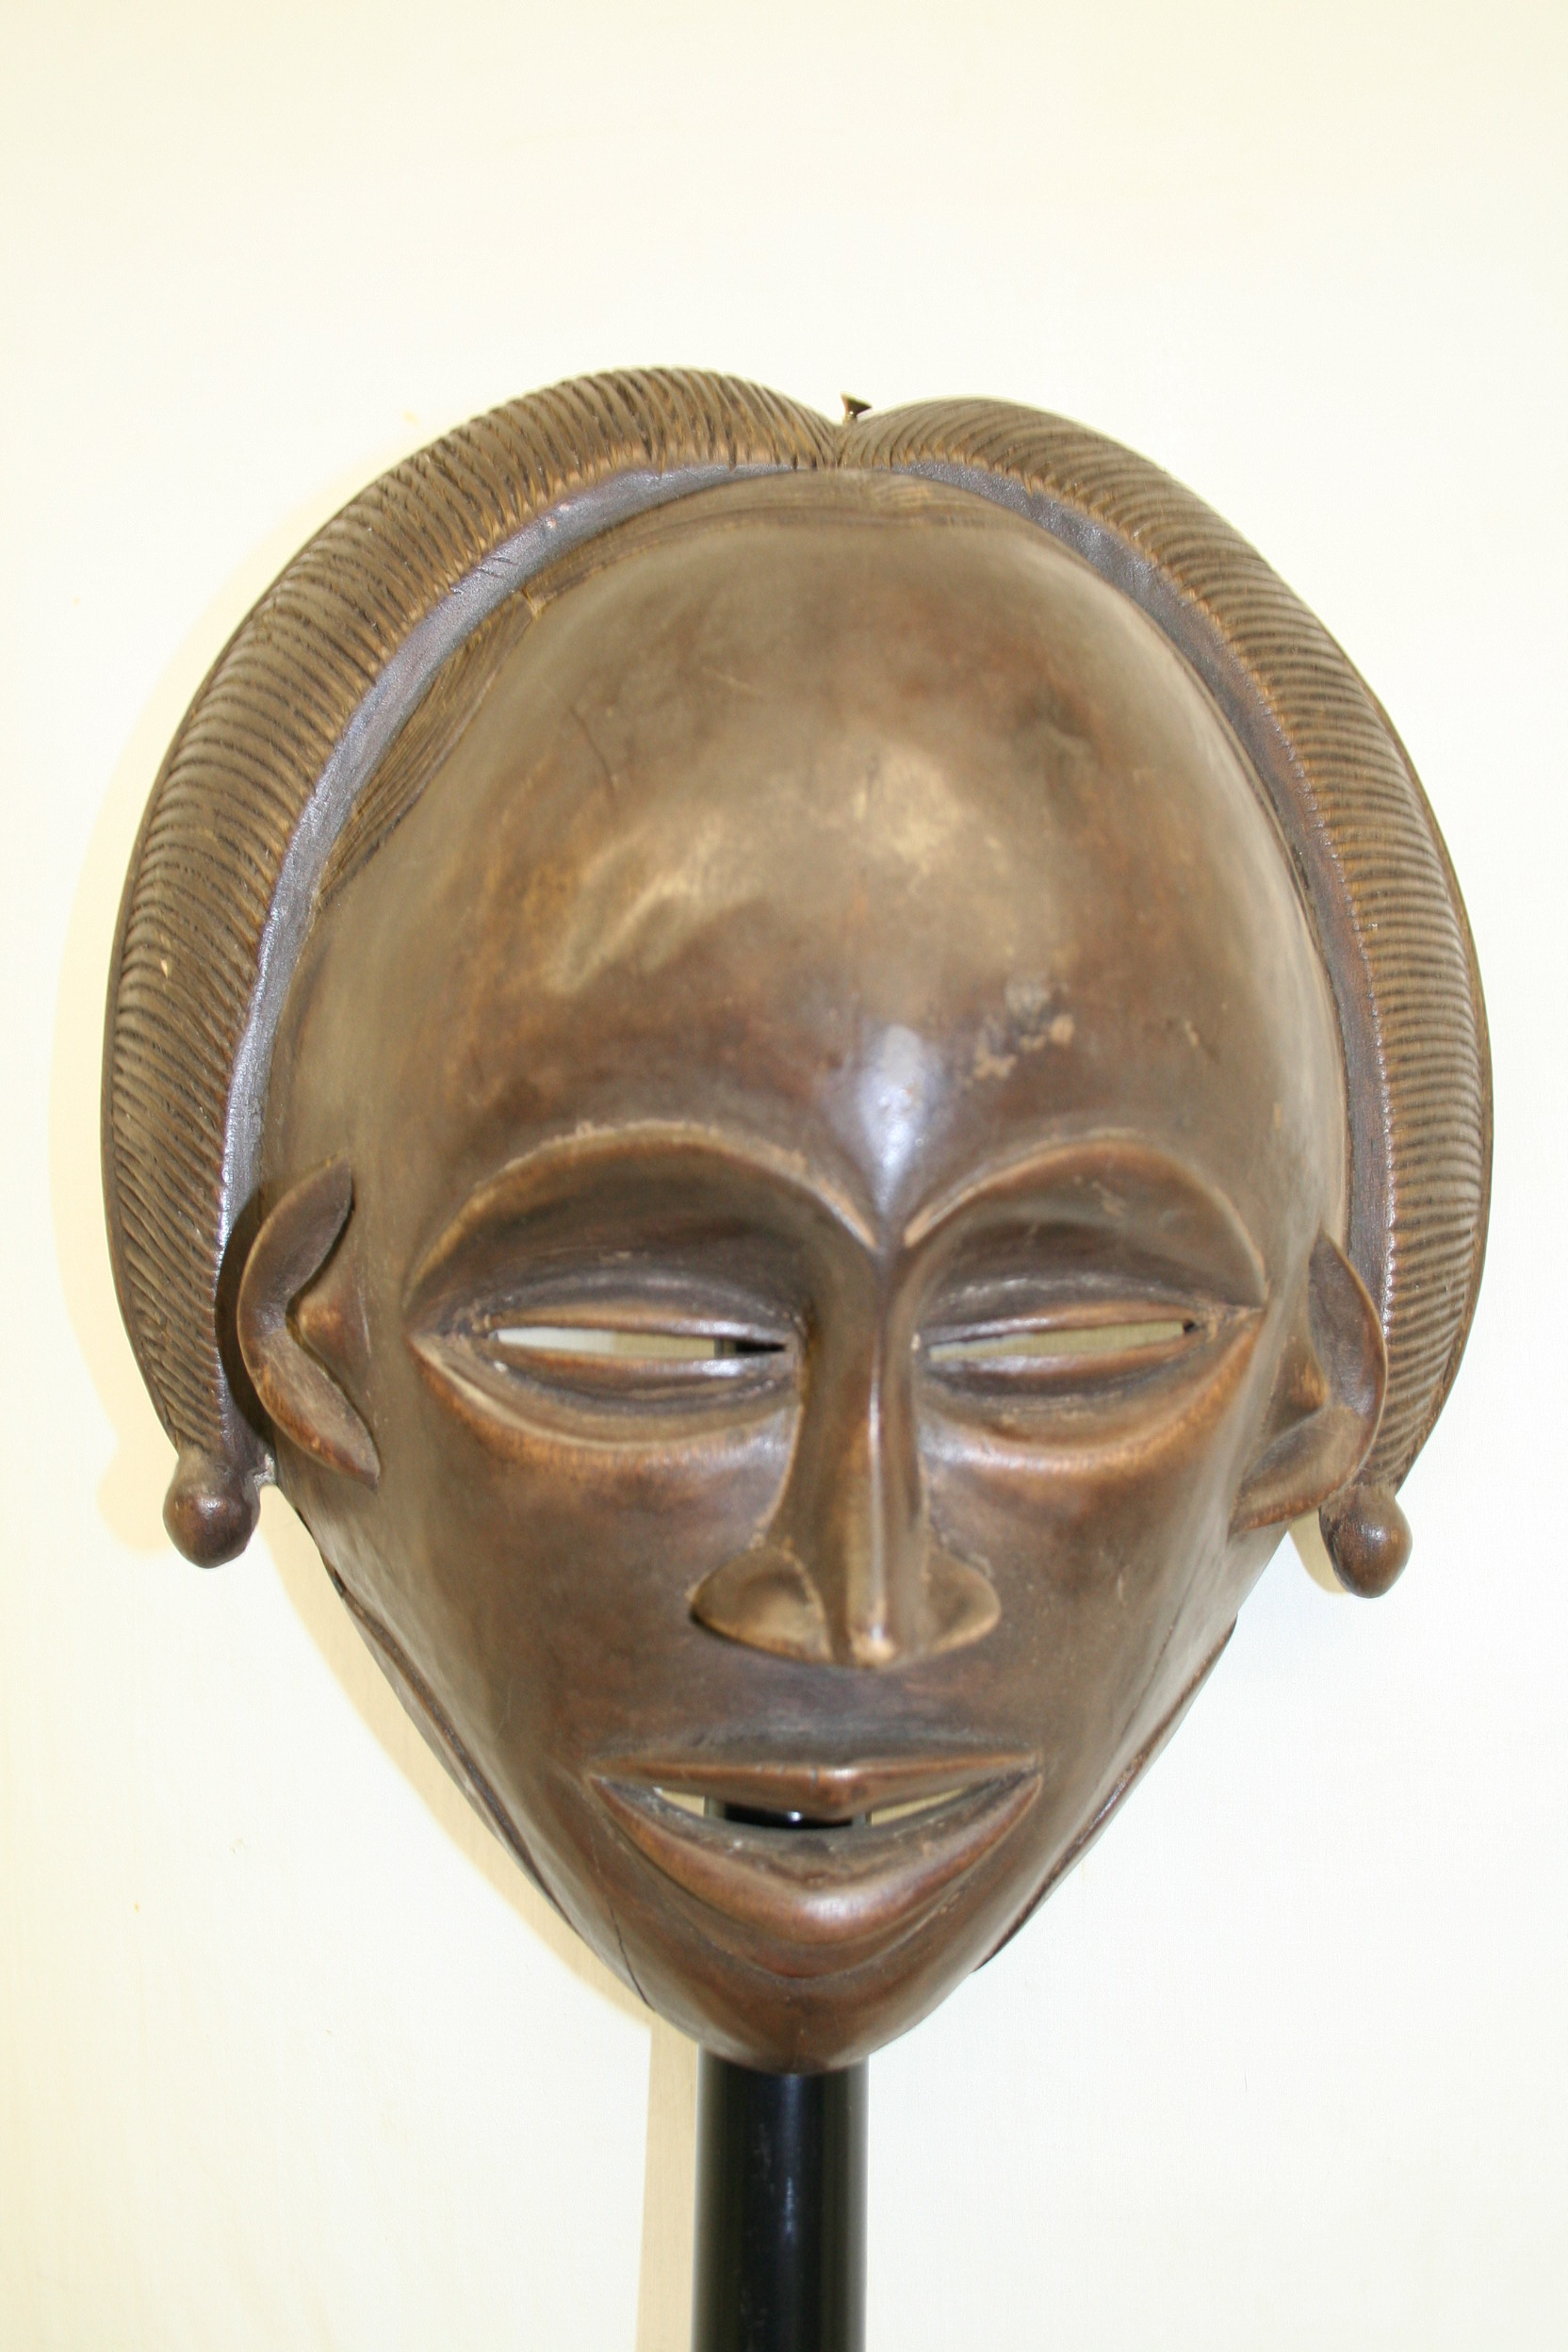 Igbo(masque), d`afrique : nigéria, statuette Igbo(masque), masque ancien africain Igbo(masque), art du nigéria - Art Africain, collection privées Belgique. Statue africaine de la tribu des Igbo(masque), provenant du nigéria, 1677:masque Igbo 2eme moitié du 20eme sc.
acheté en 1974
igbo masker 2de helft 20ste eeuw gekocht in 1974. art,culture,masque,statue,statuette,pot,ivoire,exposition,expo,masque original,masques,statues,statuettes,pots,expositions,expo,masques originaux,collectionneur d`art,art africain,culture africaine,masque africain,statue africaine,statuette africaine,pot africain,ivoire africain,exposition africain,expo africain,masque origina africainl,masques africains,statues africaines,statuettes africaines,pots africains,expositions africaines,expo africaines,masques originaux  africains,collectionneur d`art africain